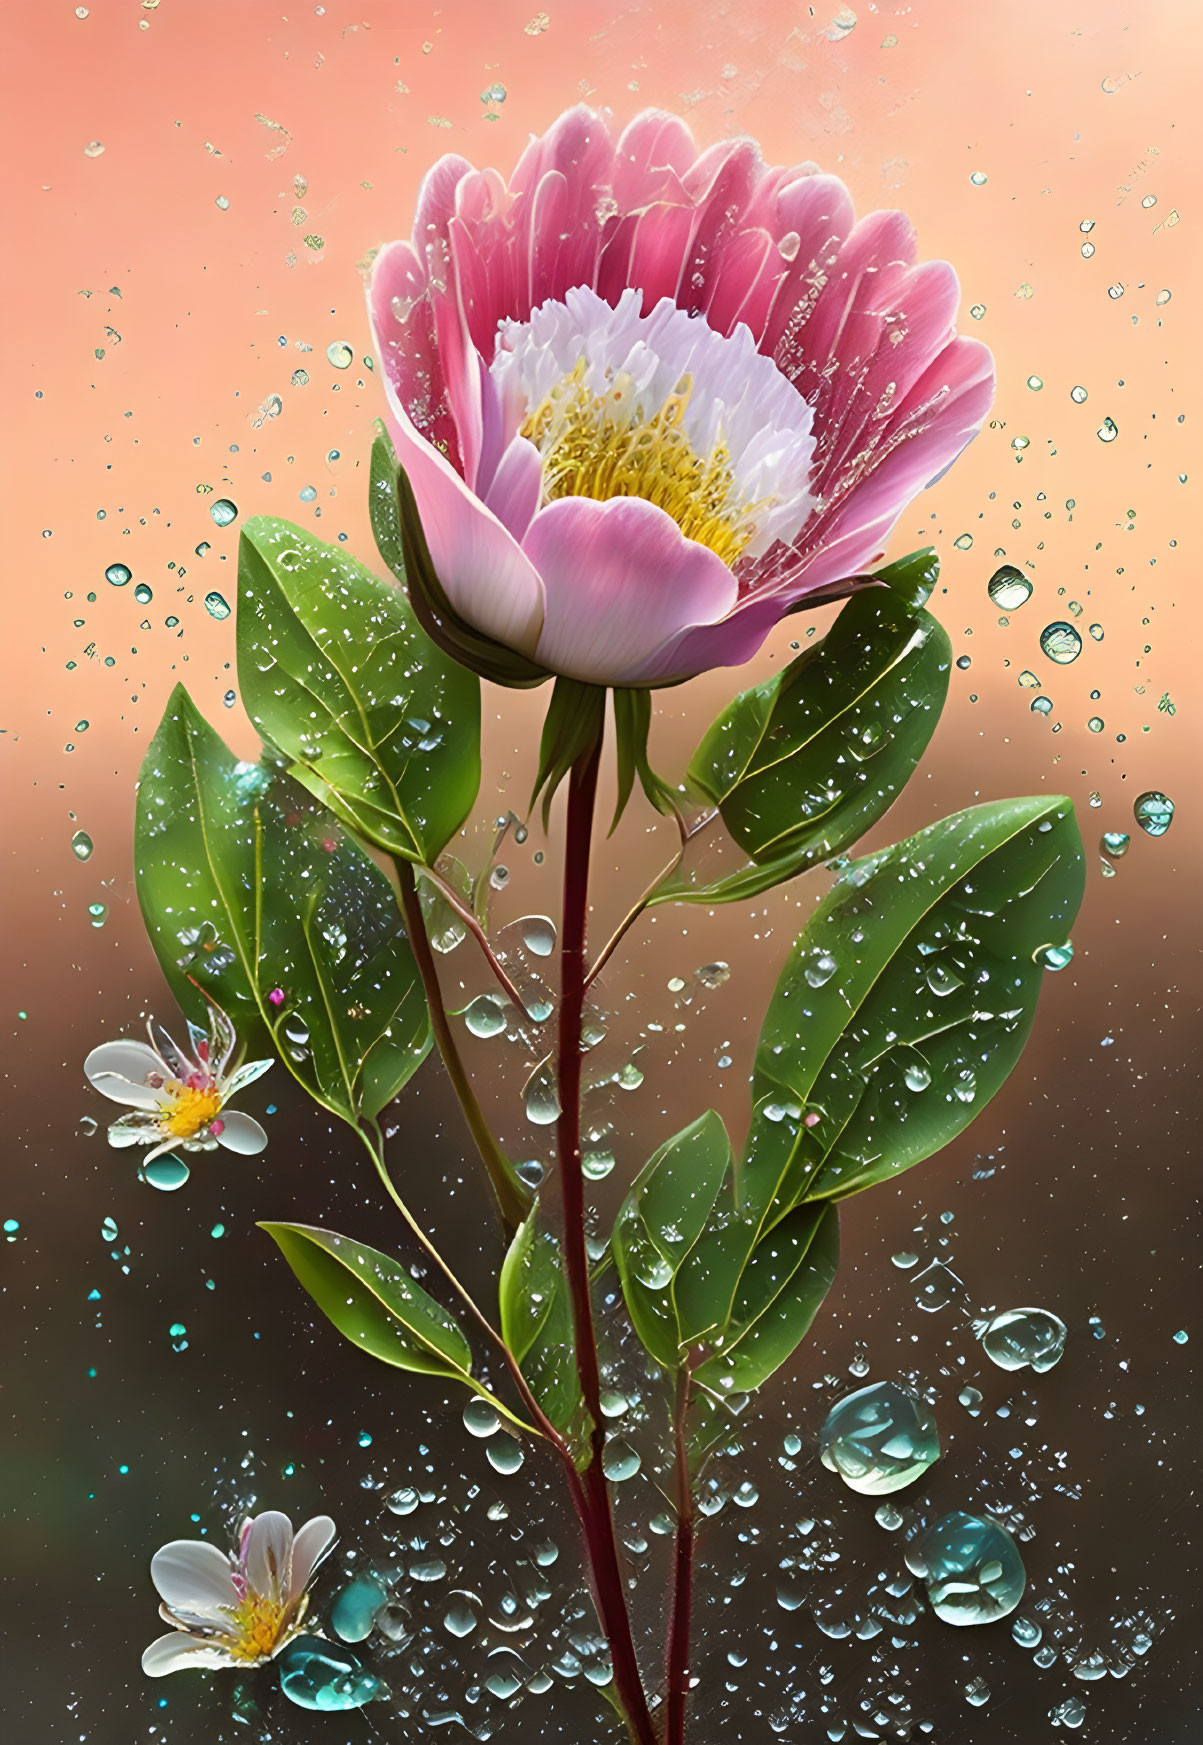 fiore bagnato dalla pioggia